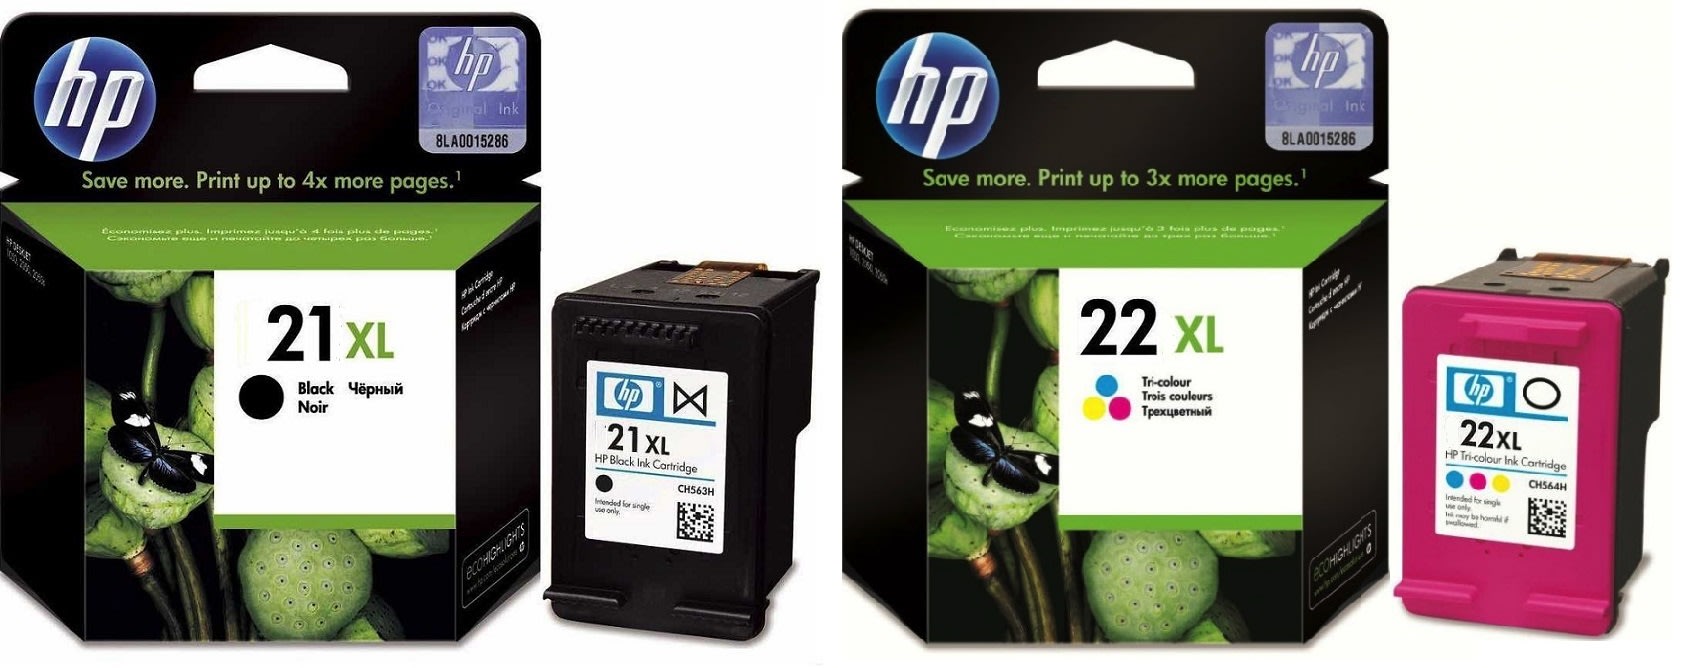 Картриджи hp 21XL 22XL для HP Deskjet F4100. Купить комплект оригинальных чернил.